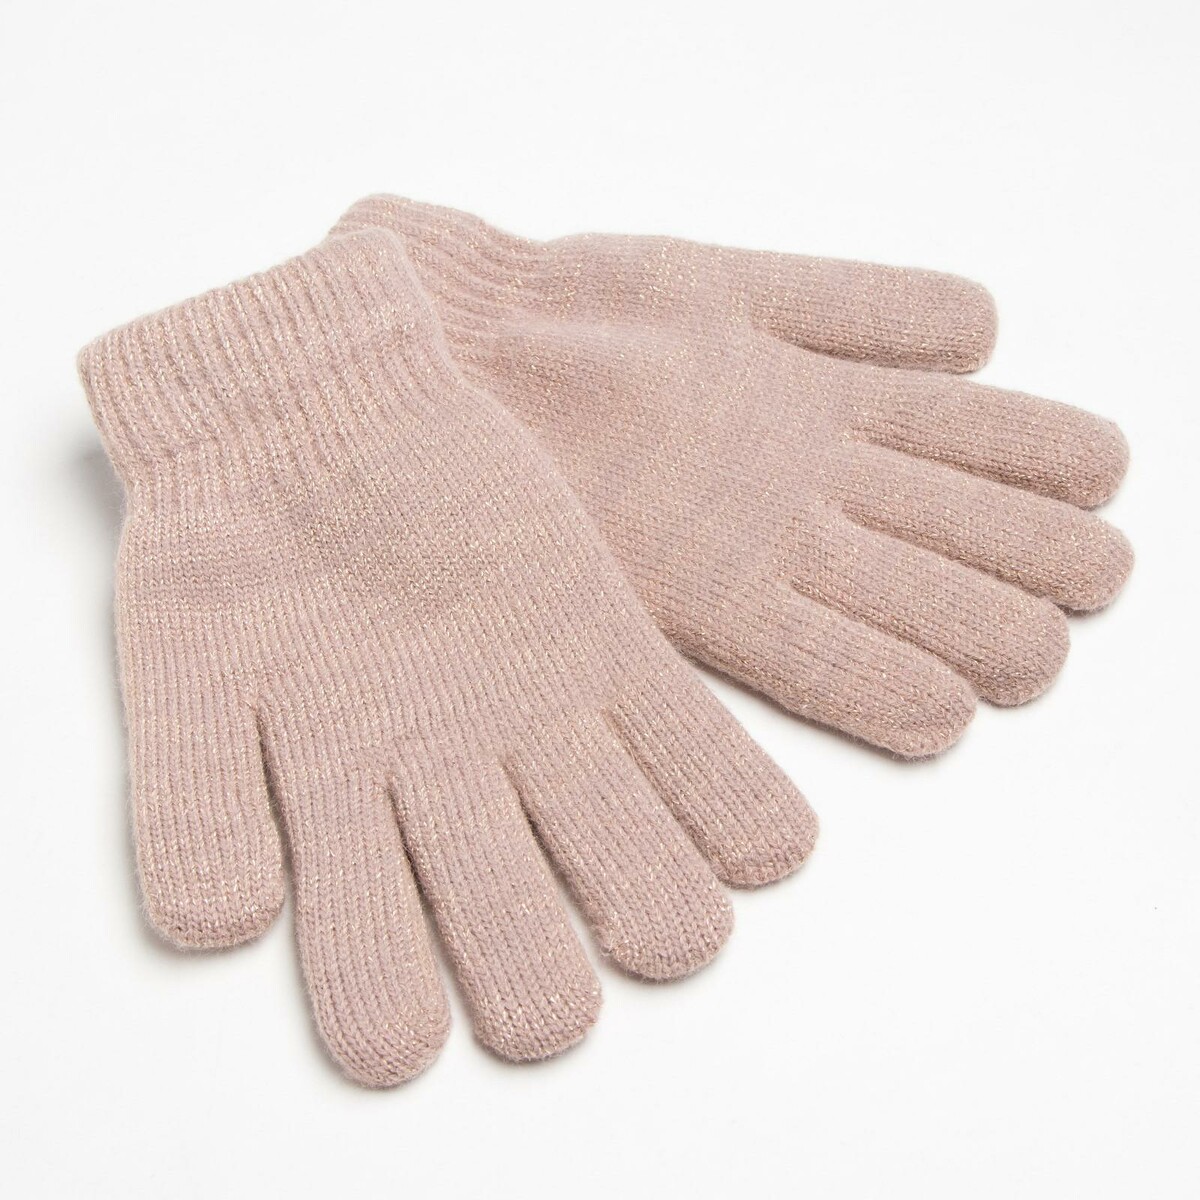 Перчатки женские двухслойные minaku однотонные, размер 6,5, цвет бежевый перчатки мужские minaku однотонные цв р р 9 10 22 24 см